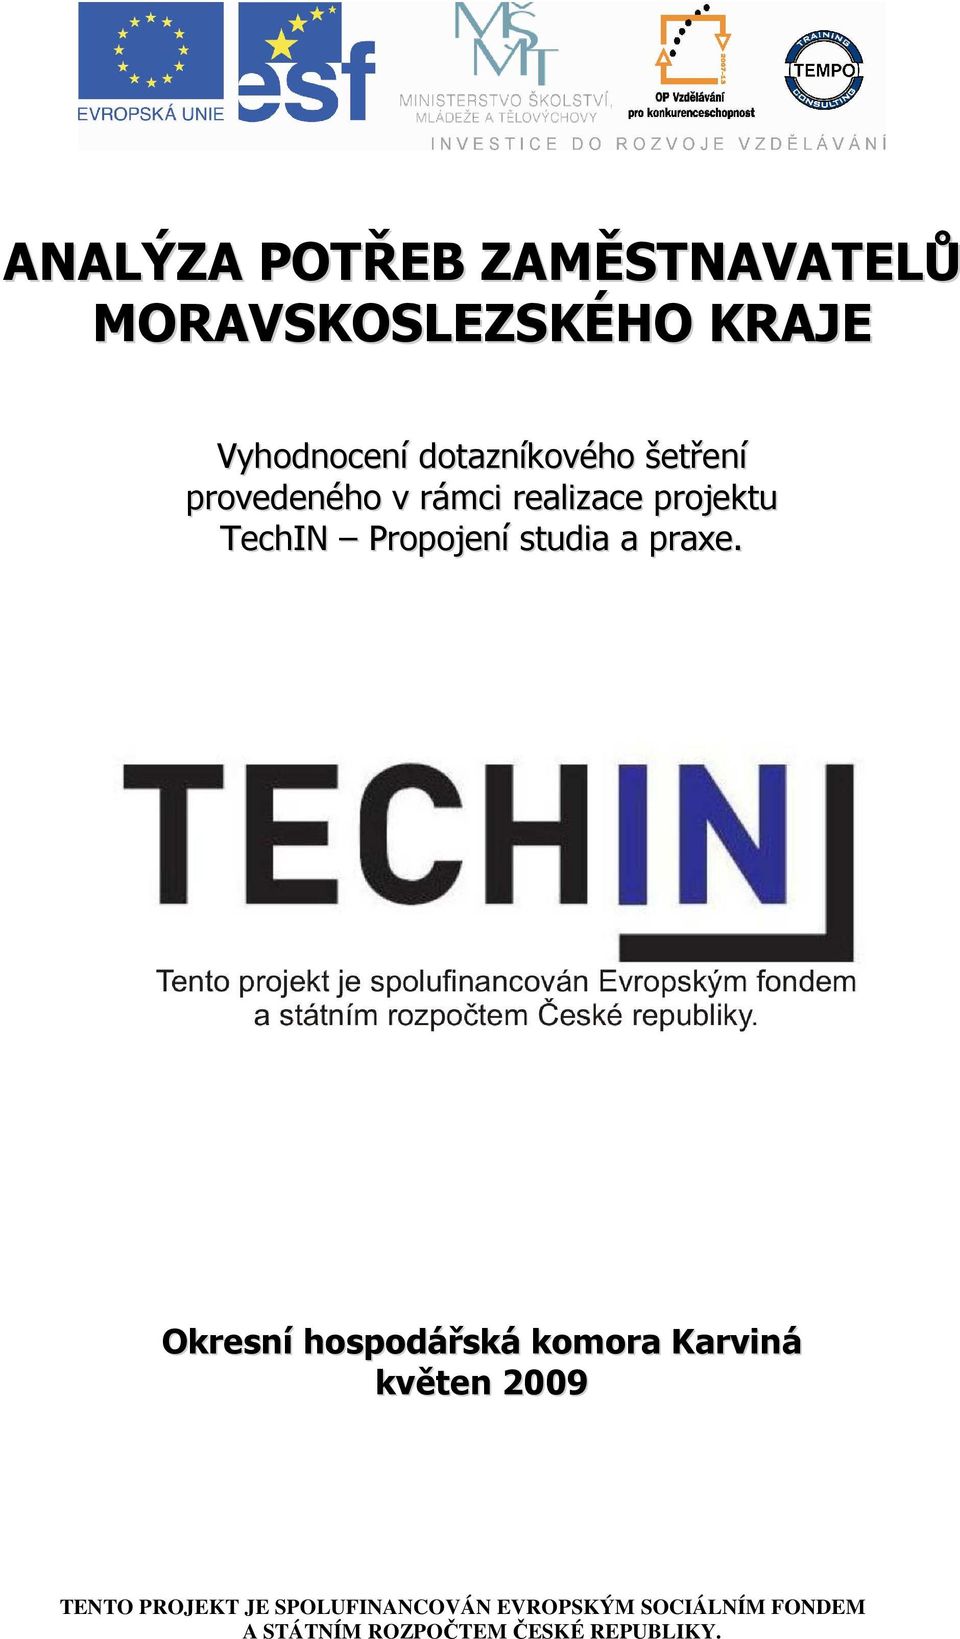 v rámci realizace projektu TechIN Propojení studia